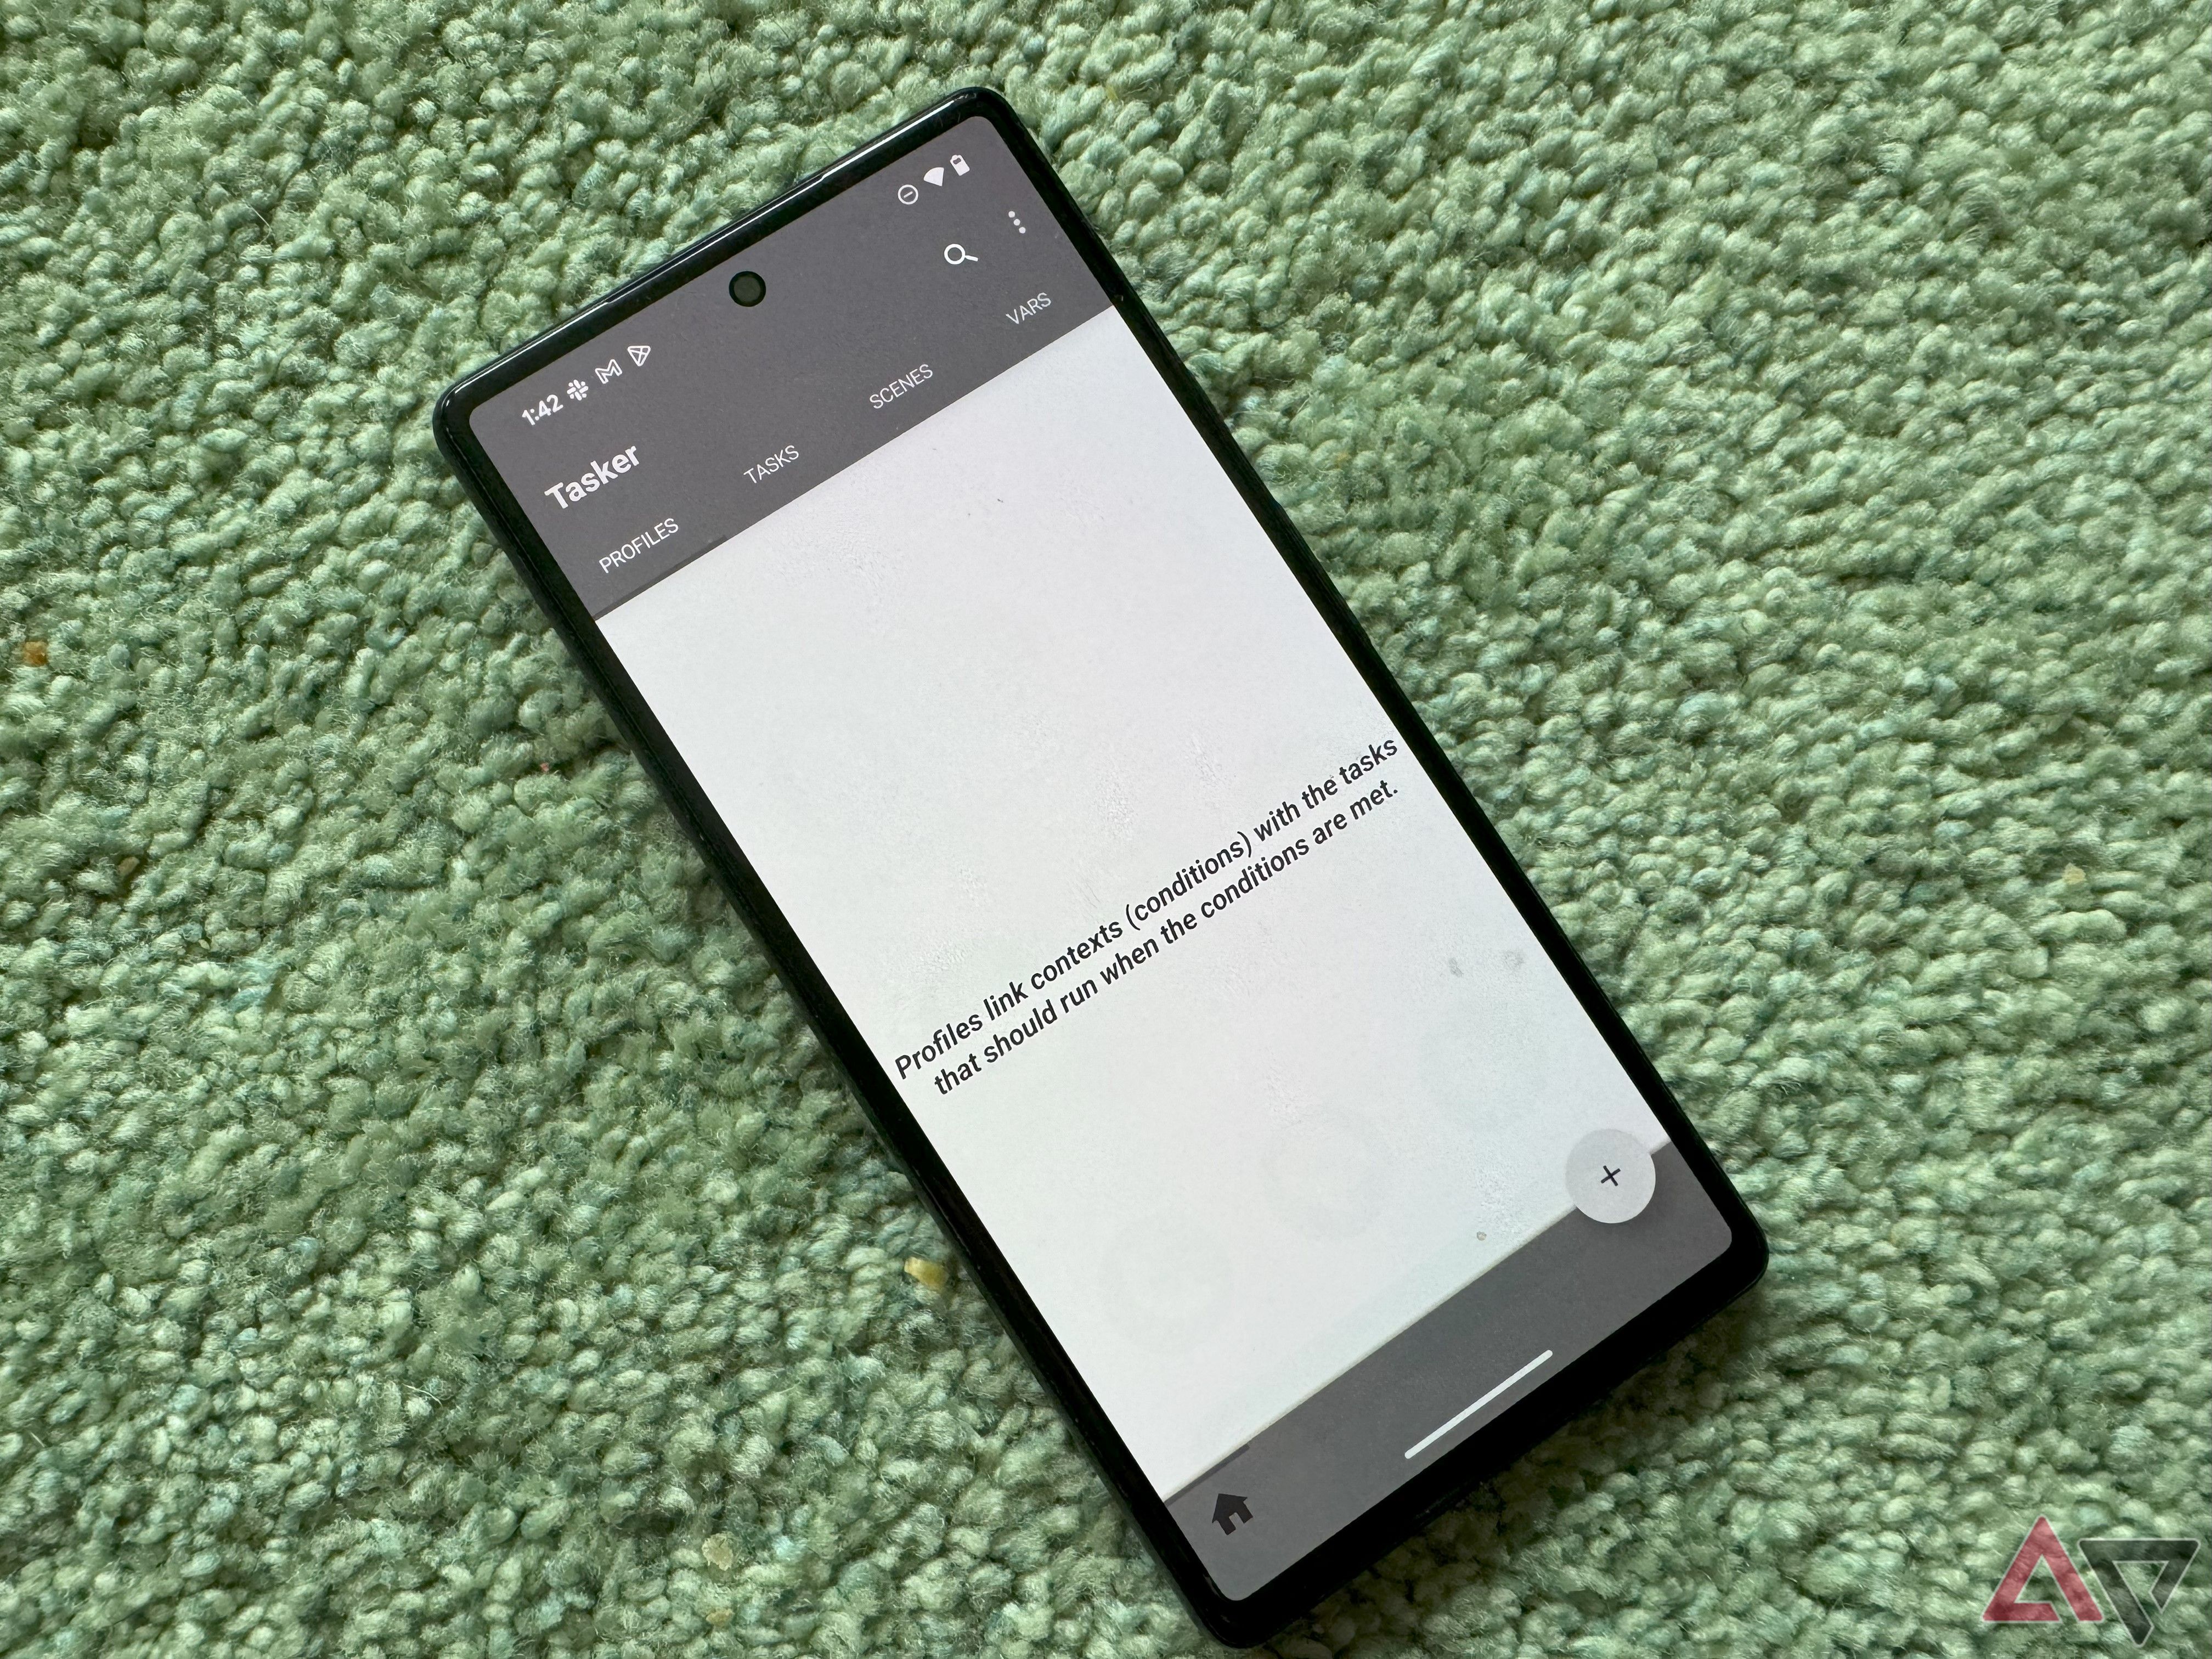 Um smartphone Pixel em um tapete verde com o app Tasker aberto.